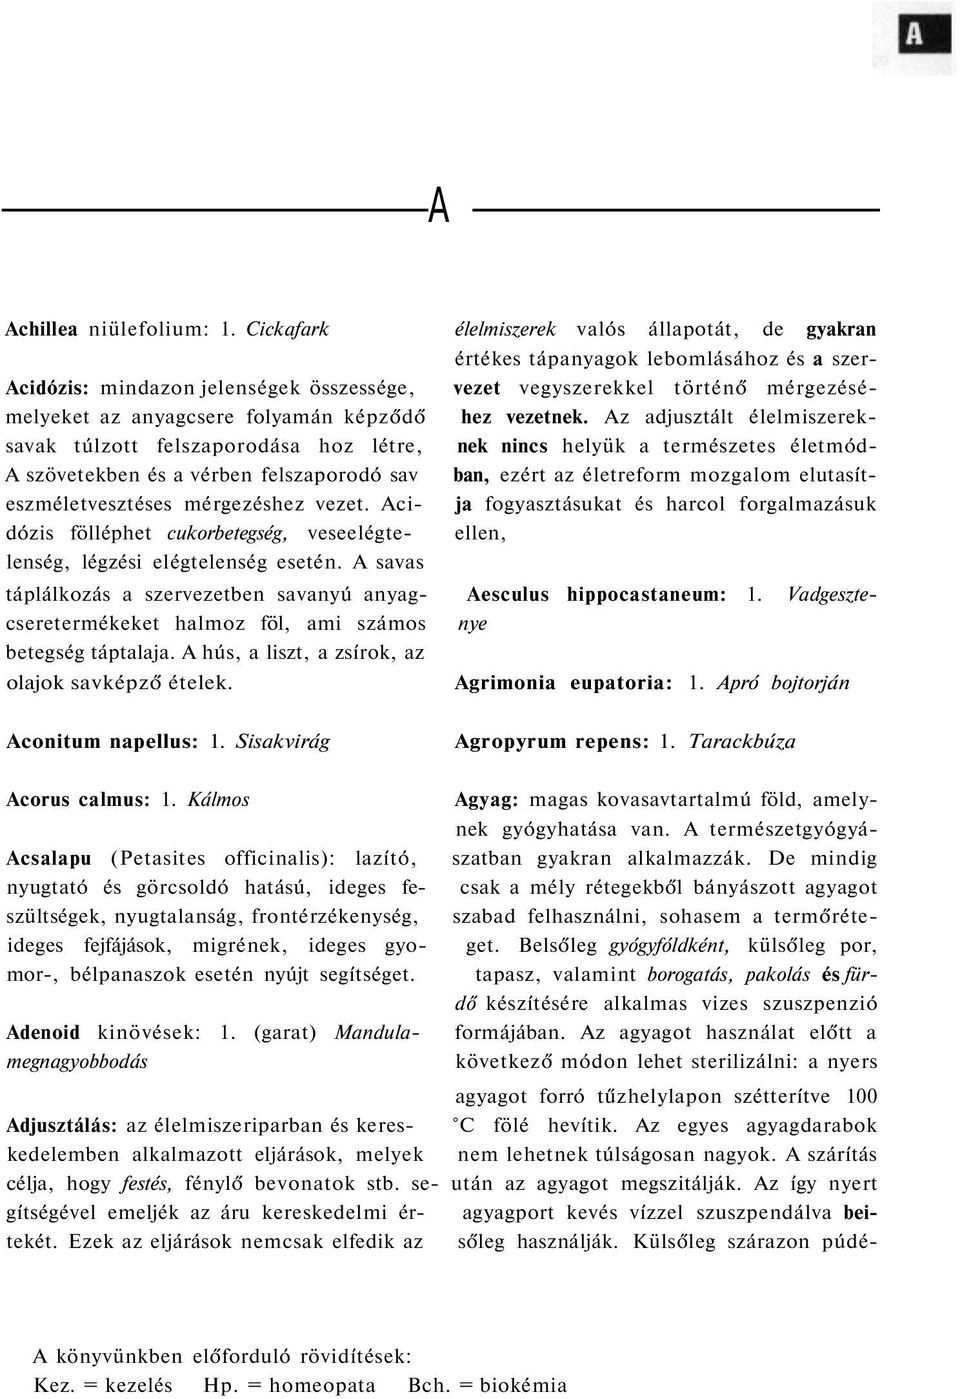 A természetgyógyászat kézikönyve - PDF Ingyenes letöltés